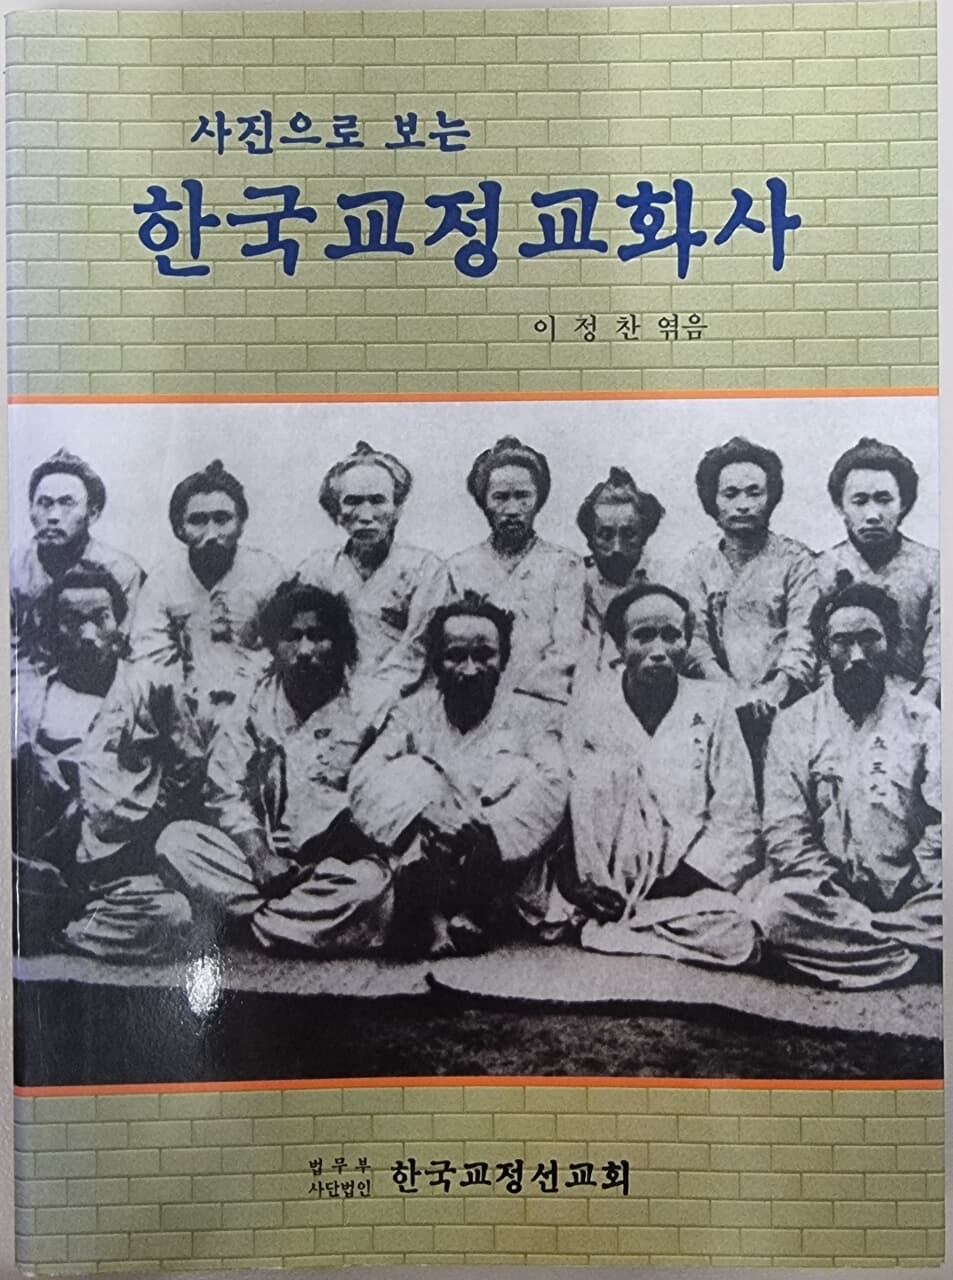 사진으로 보는 한국교정교화사